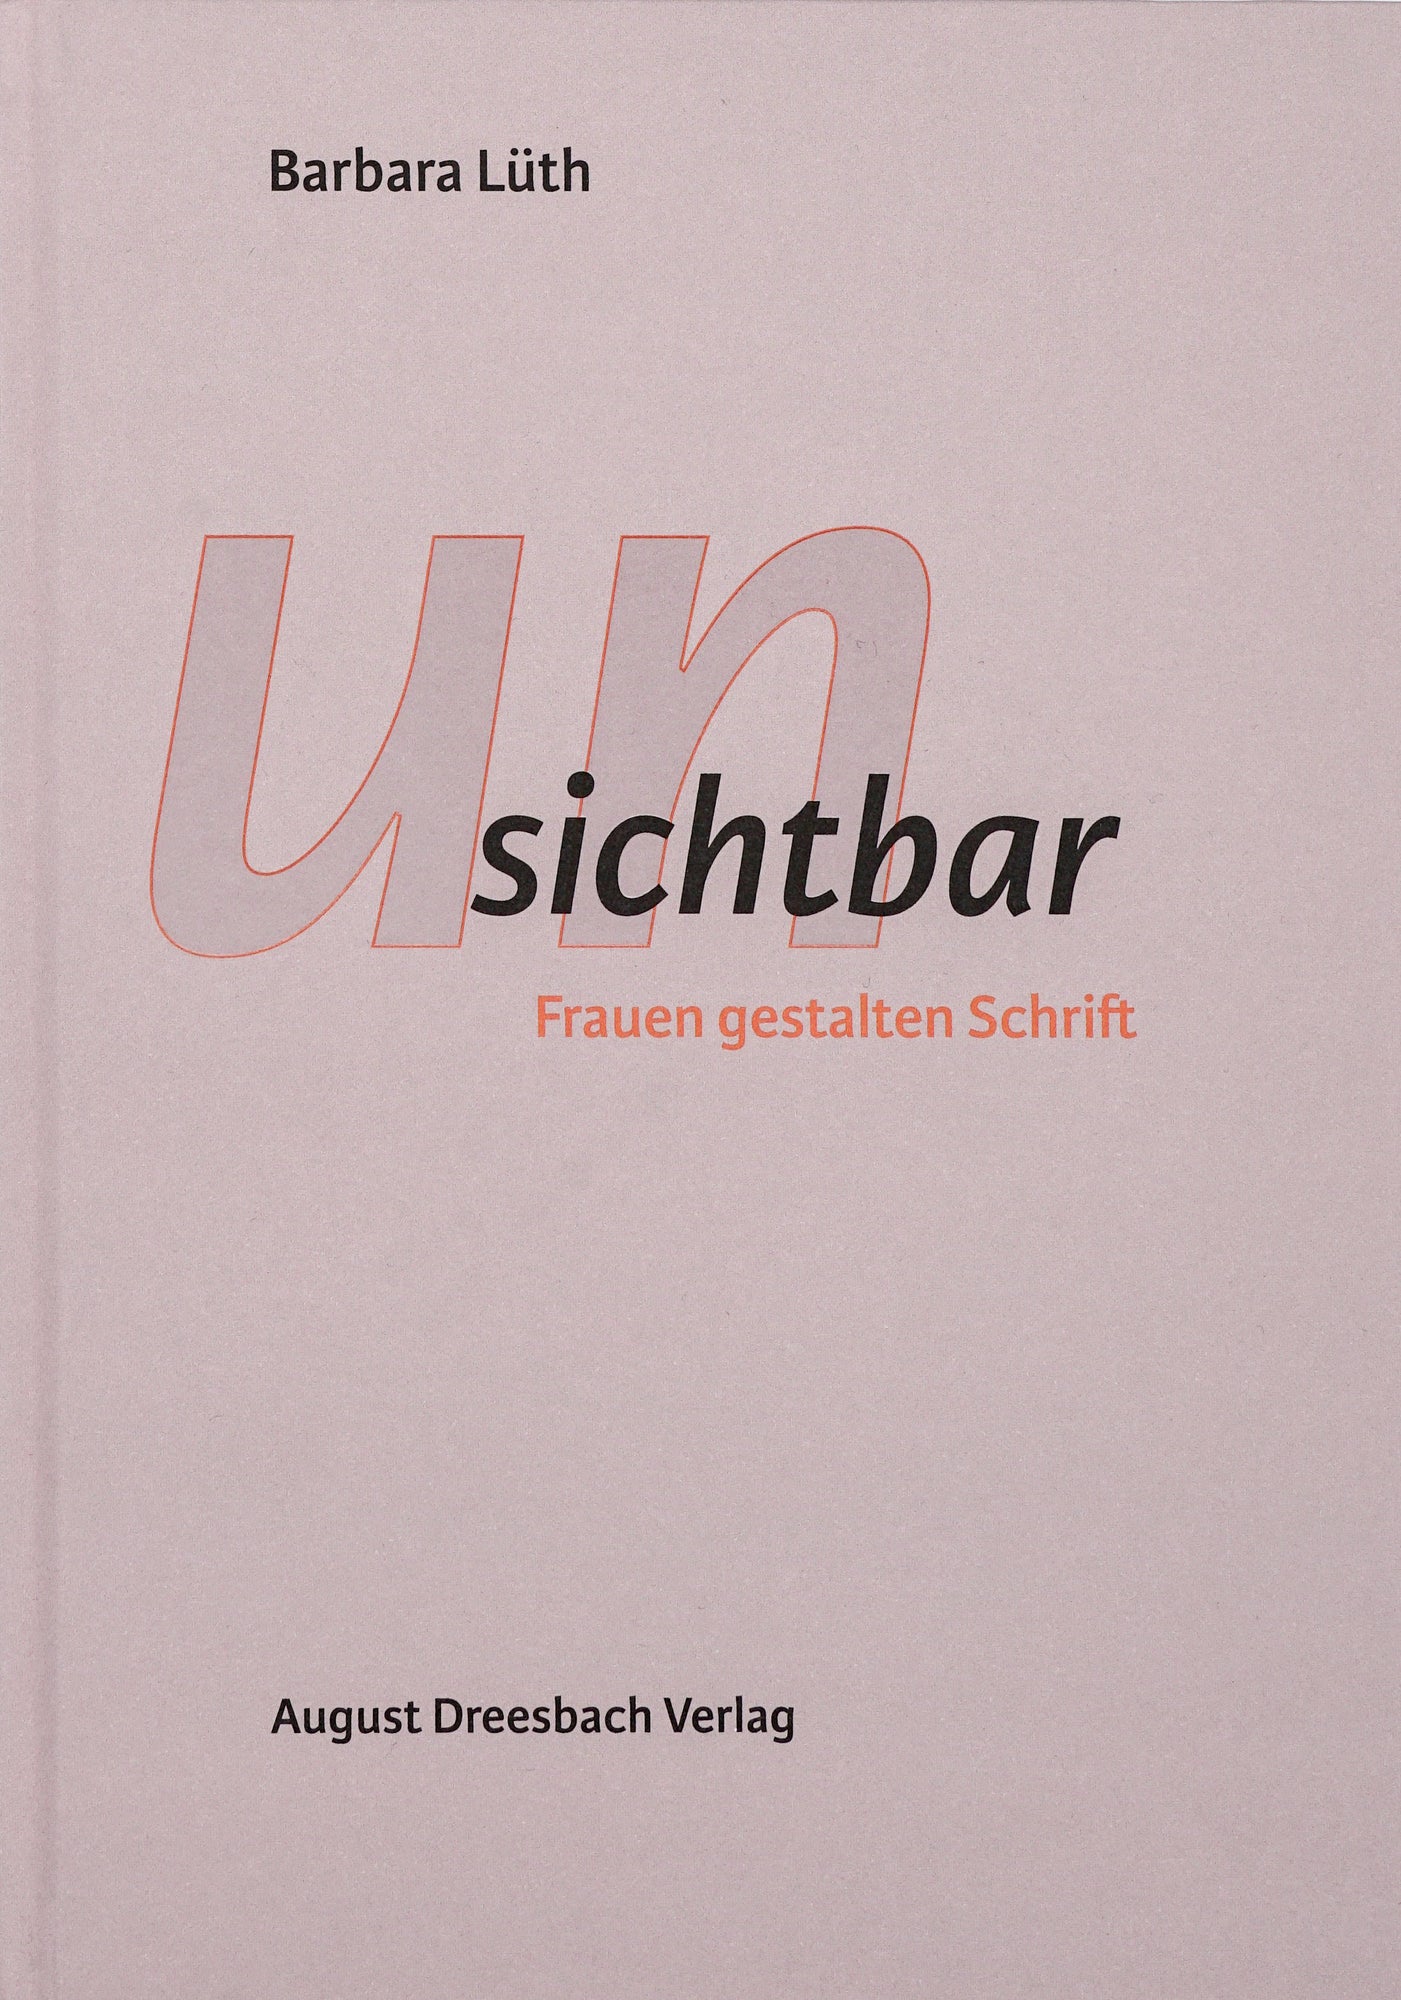 Der Buchdeckel zeigt, auf einem pastellvioletten Hintergrund, den Titel, die Autorin und den Verlag, in orange und schwarzer, dynamischer sans serif Schrift.